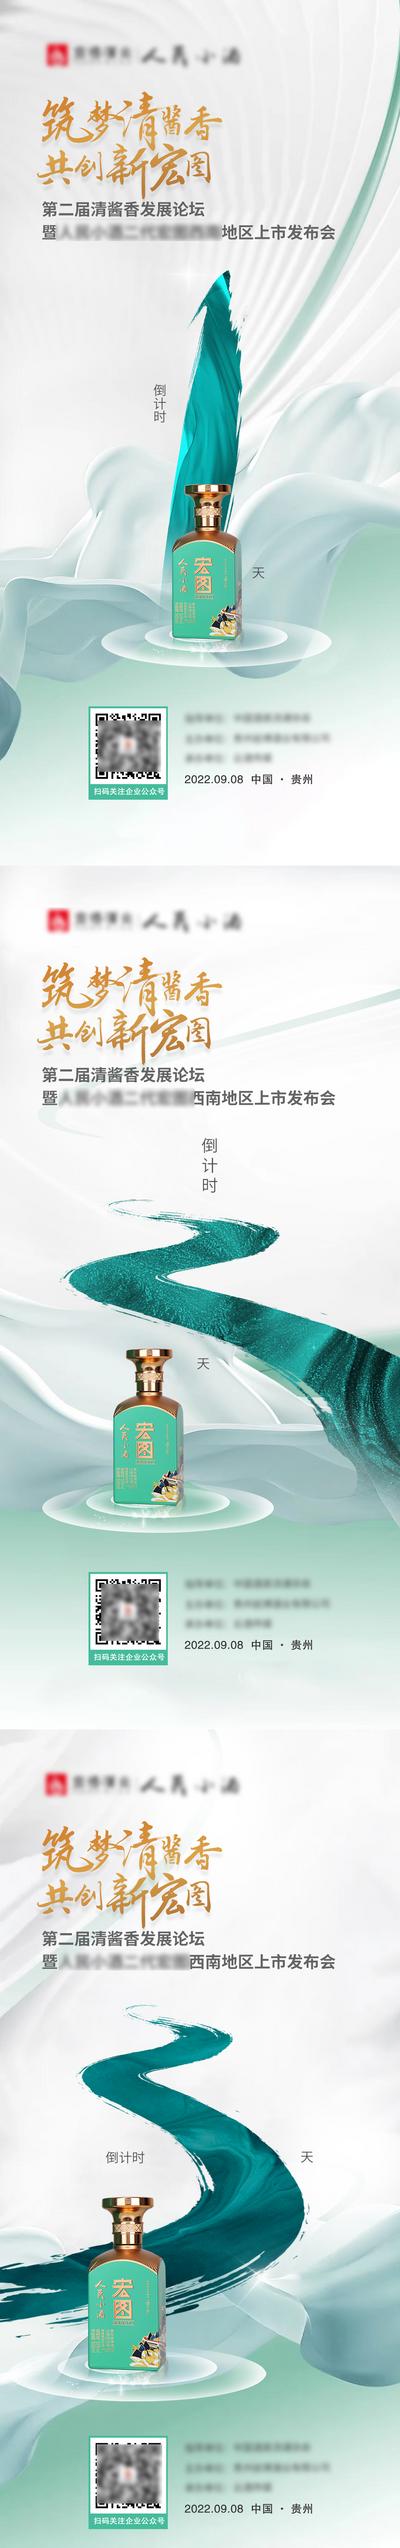 南门网 中国风山水酒类发布会倒计时海报